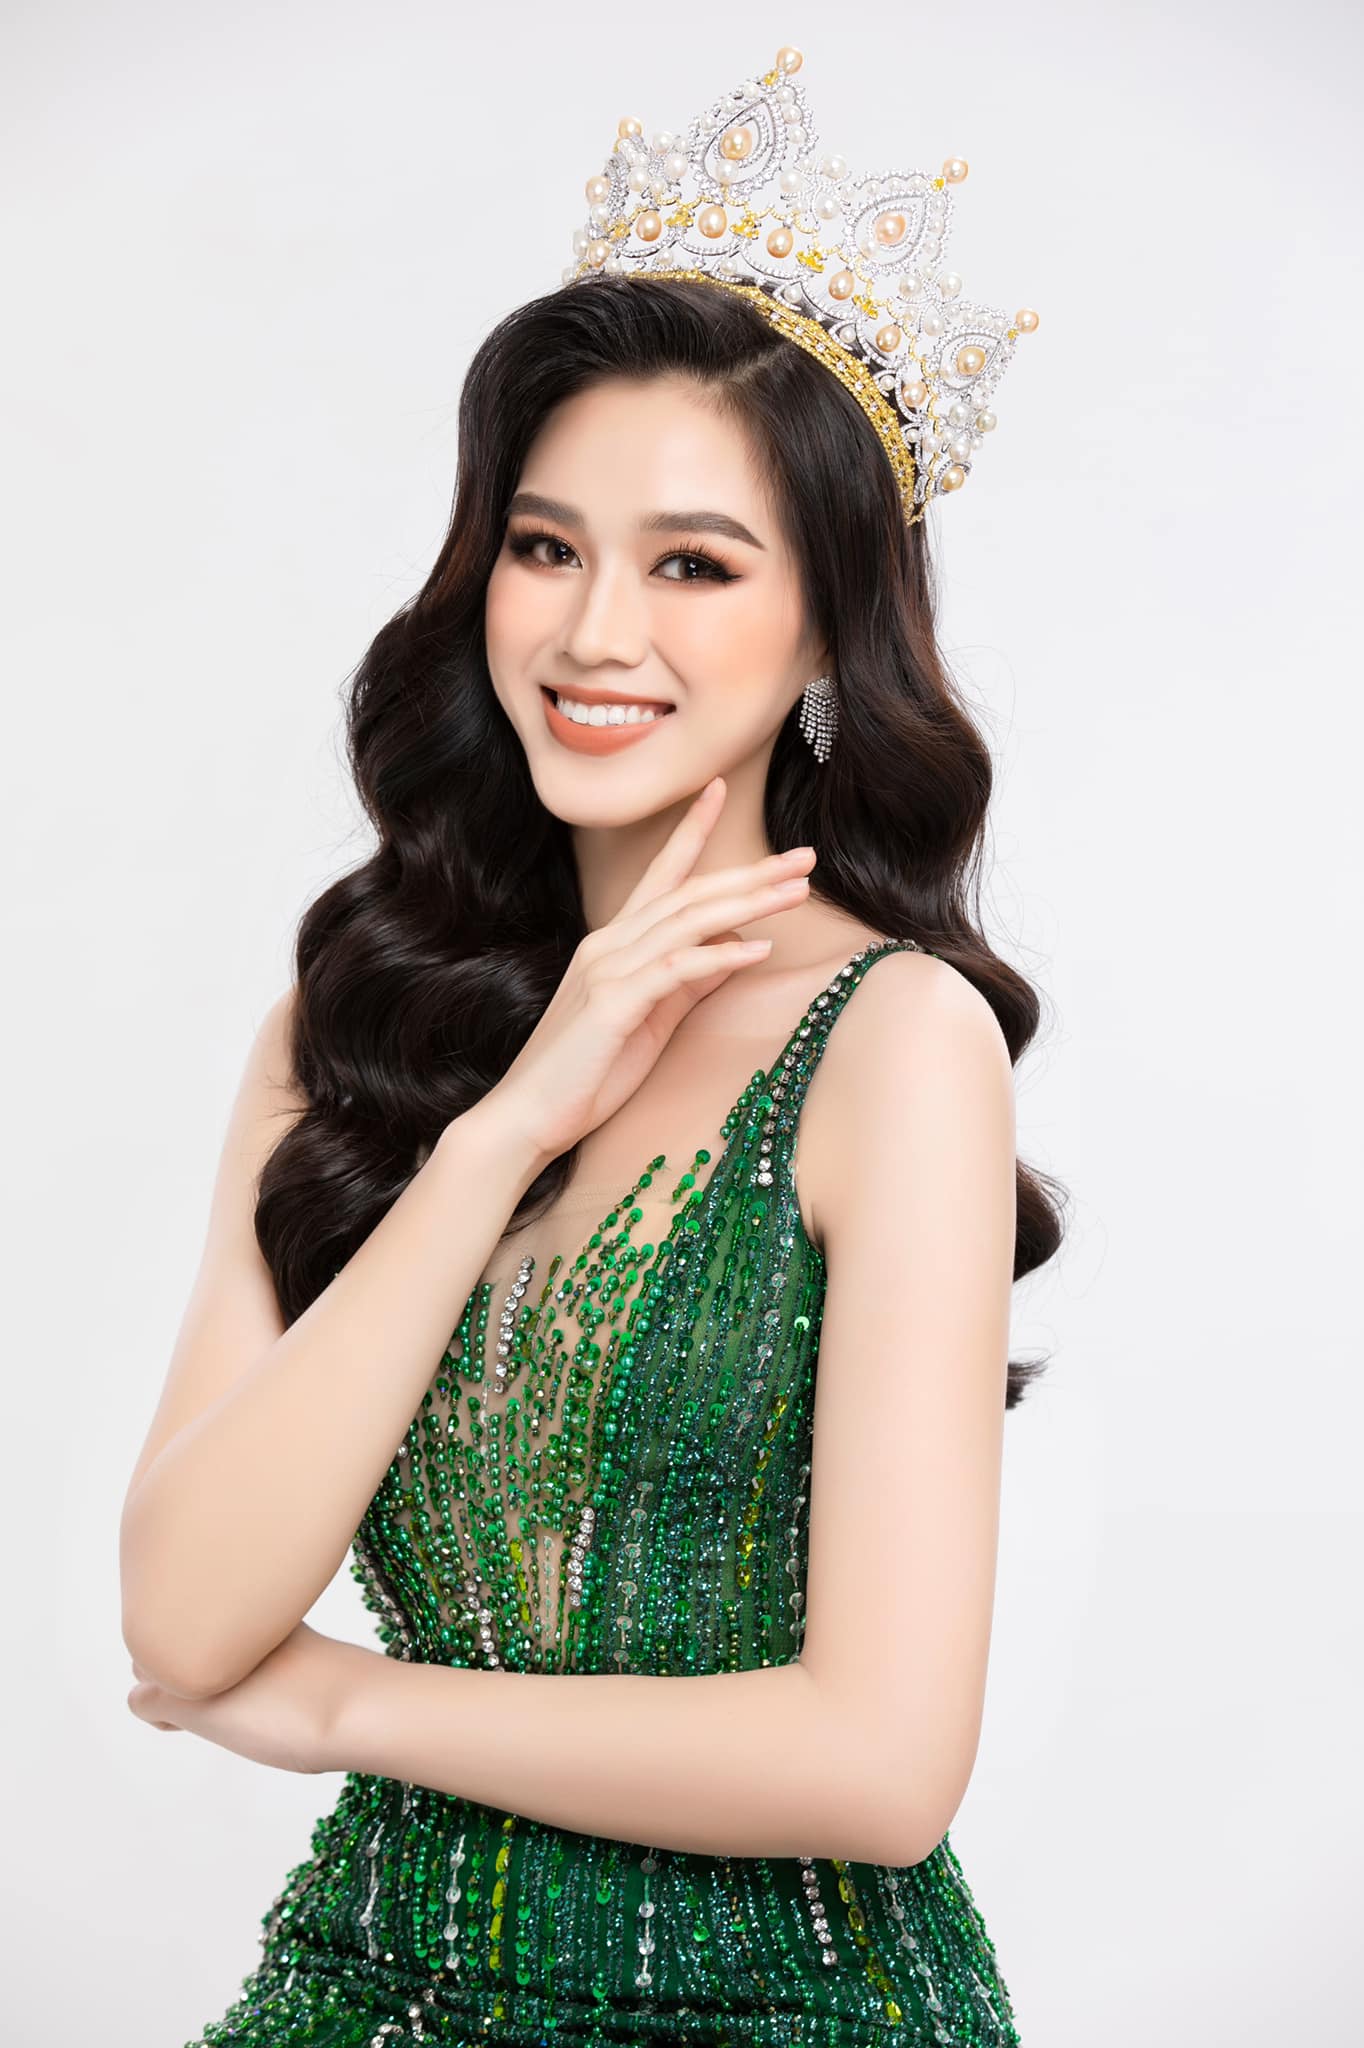 Hoa hậu Đỗ Thị Hà mặc áo phông nhàu đón tuổi 20 không tiệc tùng - Ảnh 4